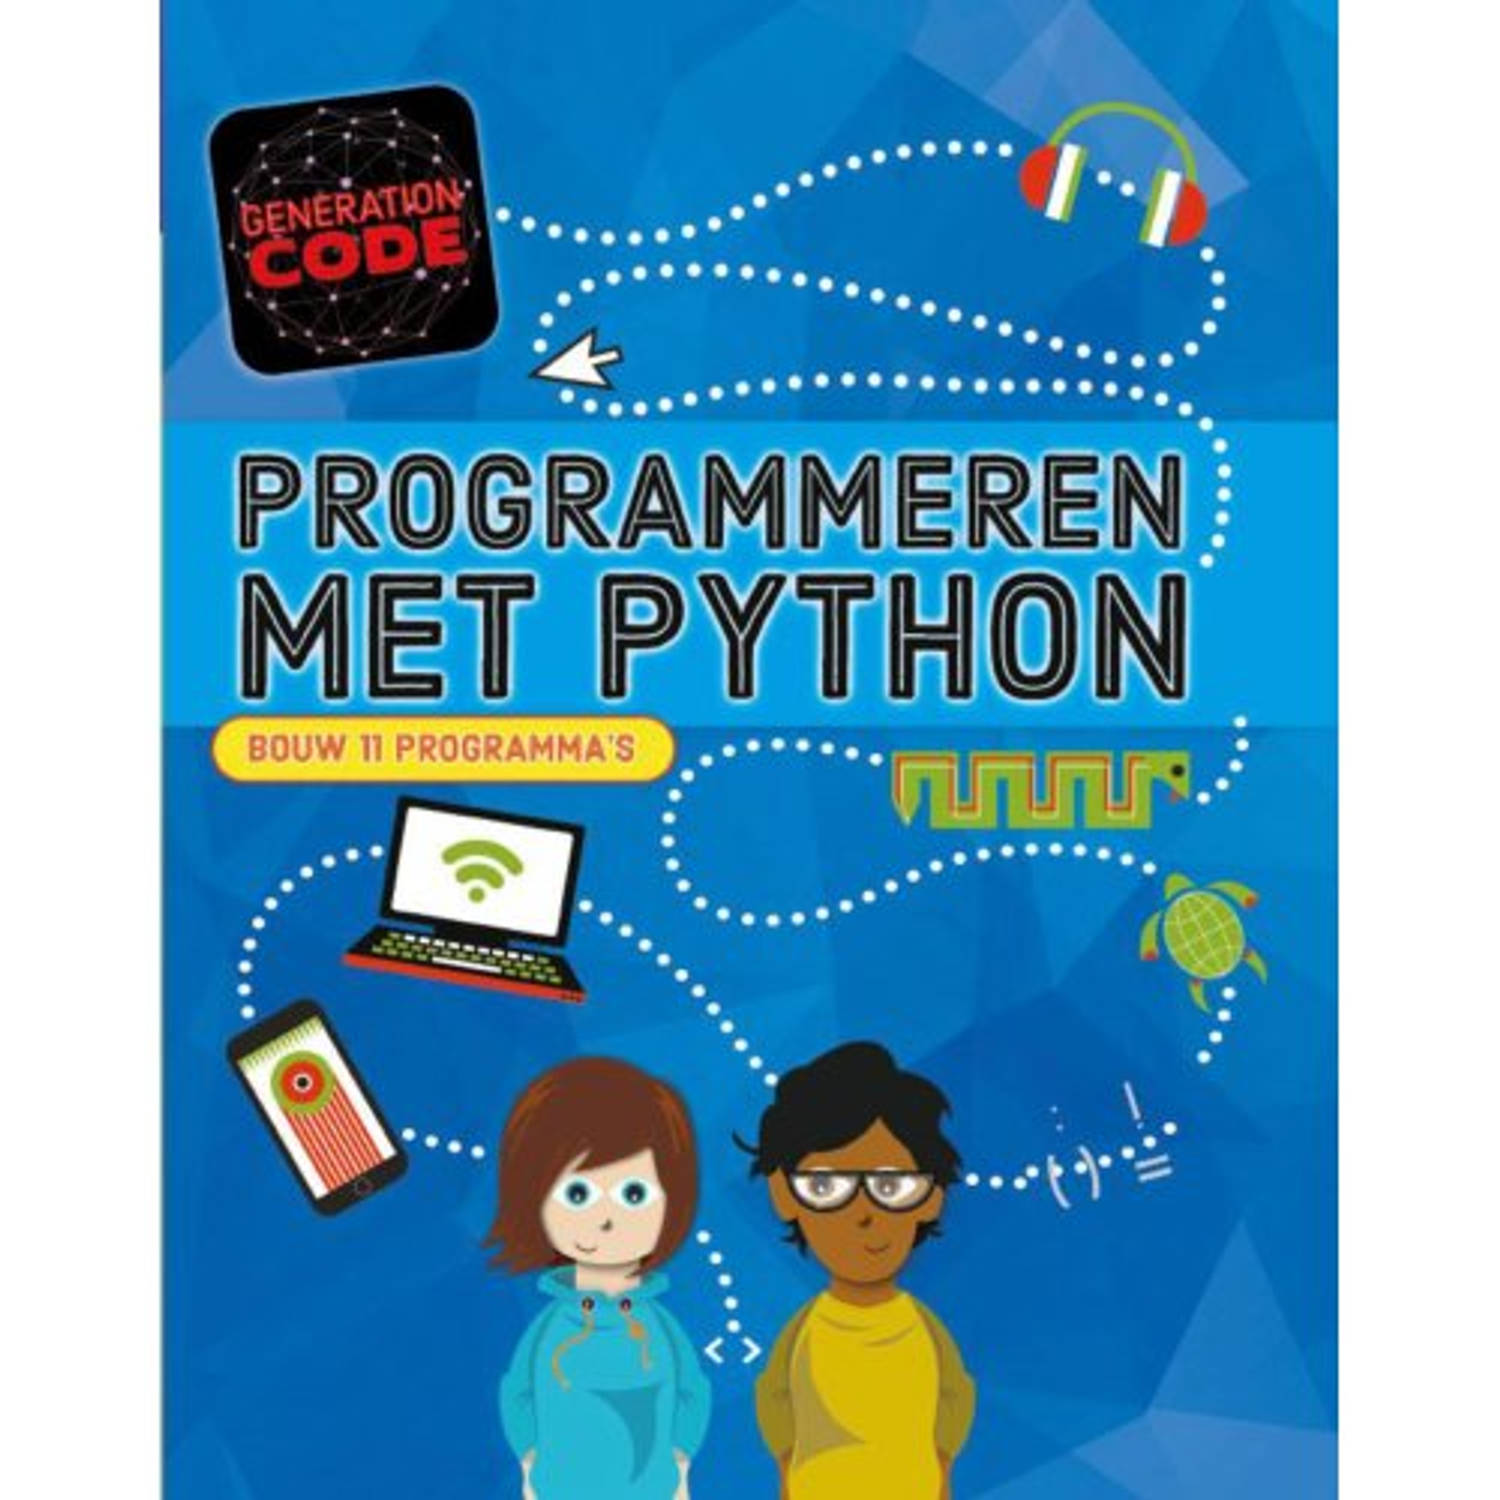 Programmeren met Python - Generation code